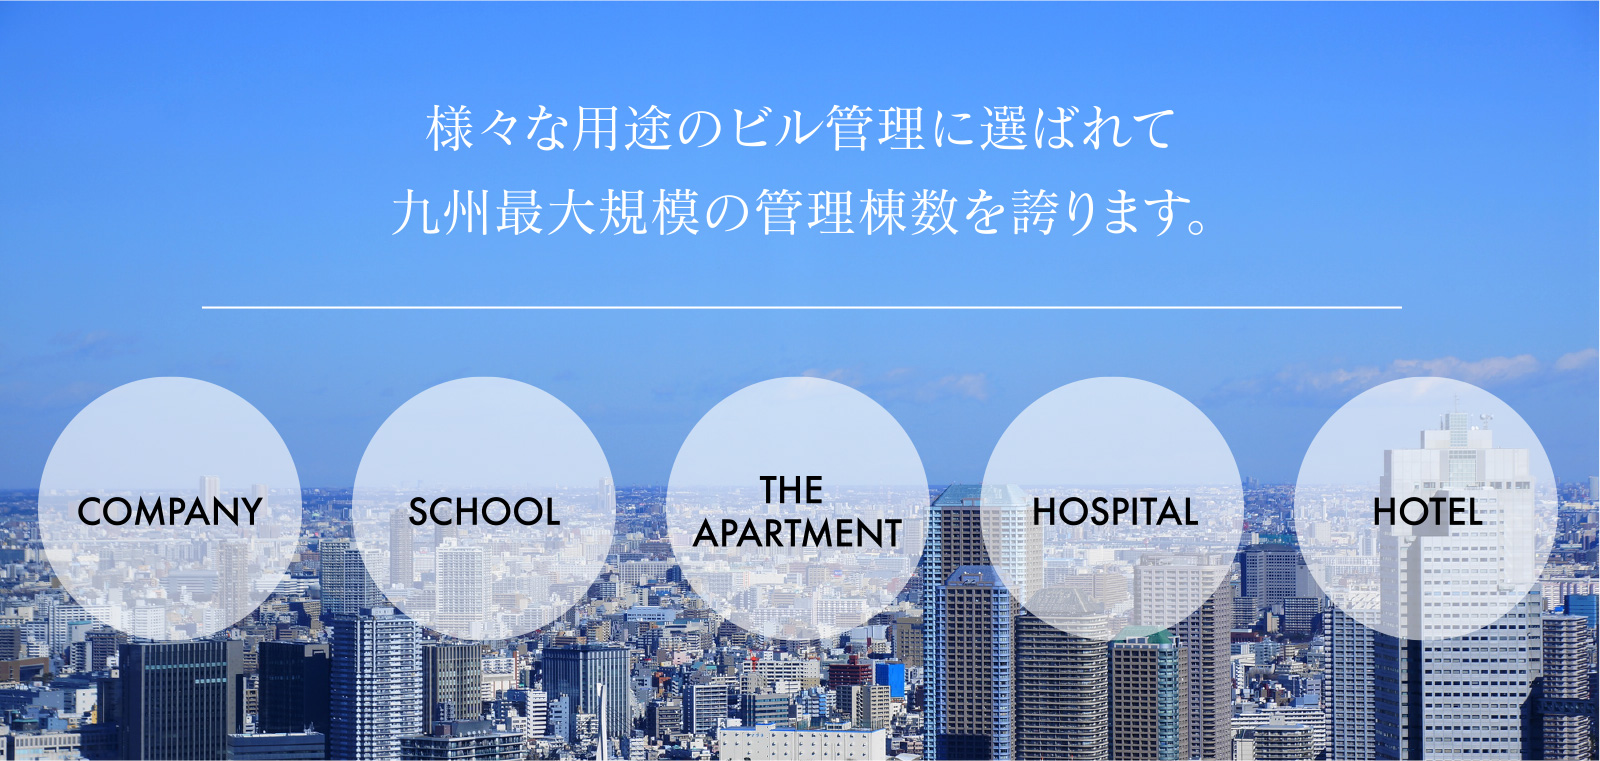 様々な用途のビル管理に選ばれて九州最大規模の管理棟数を誇ります。